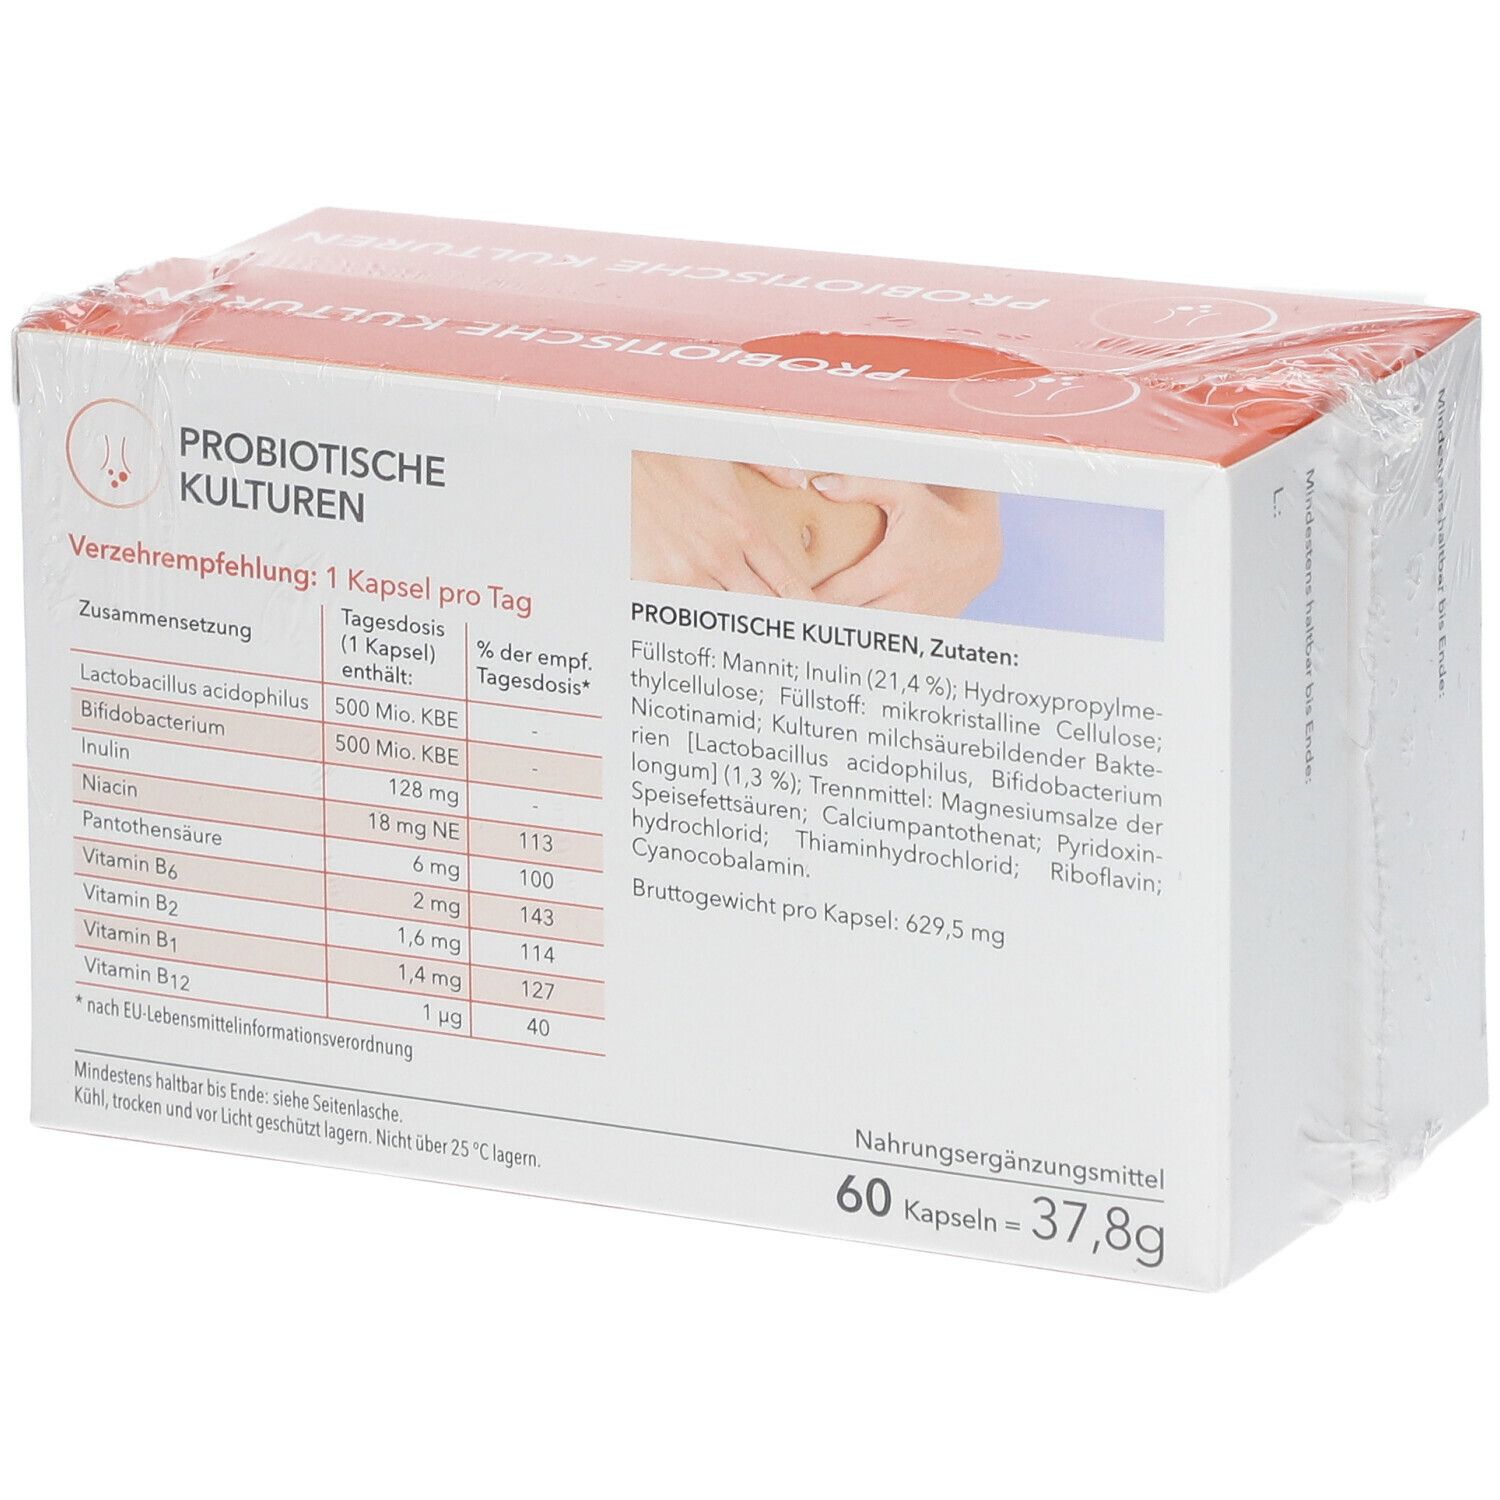 MEDICOM ® cultures probiotiques 2 x 60 capsules